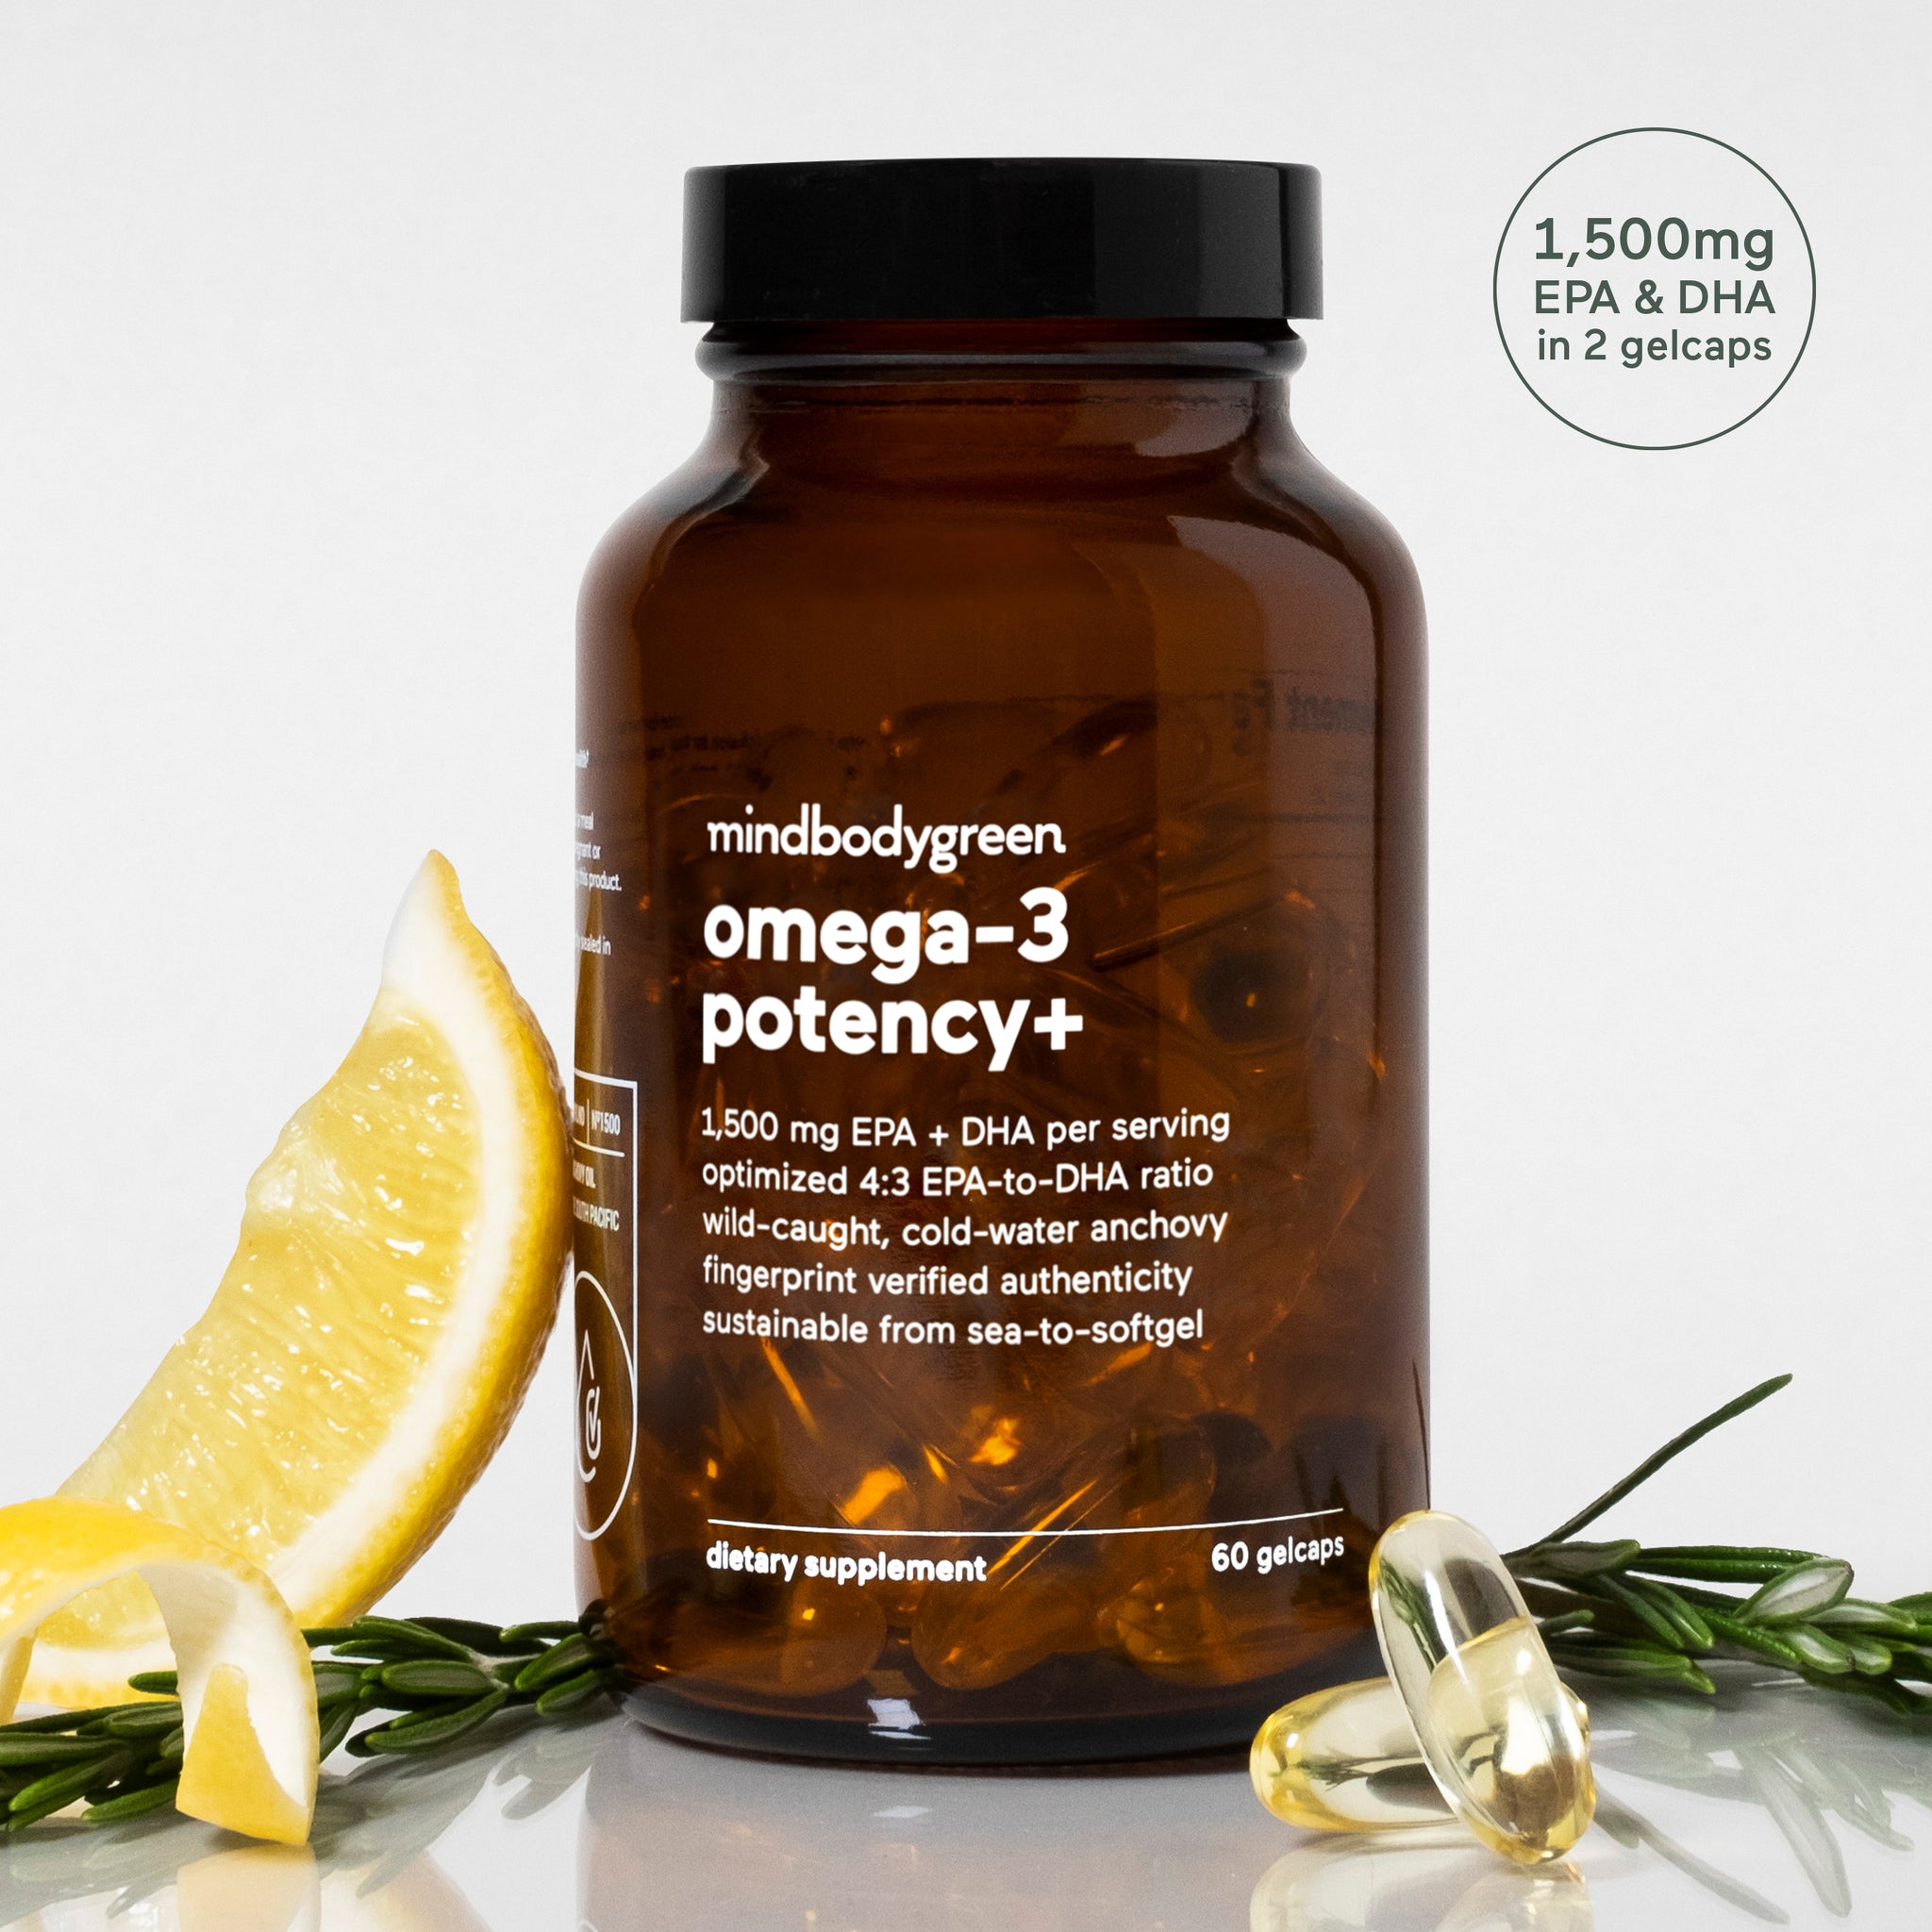 omega-3 potency+